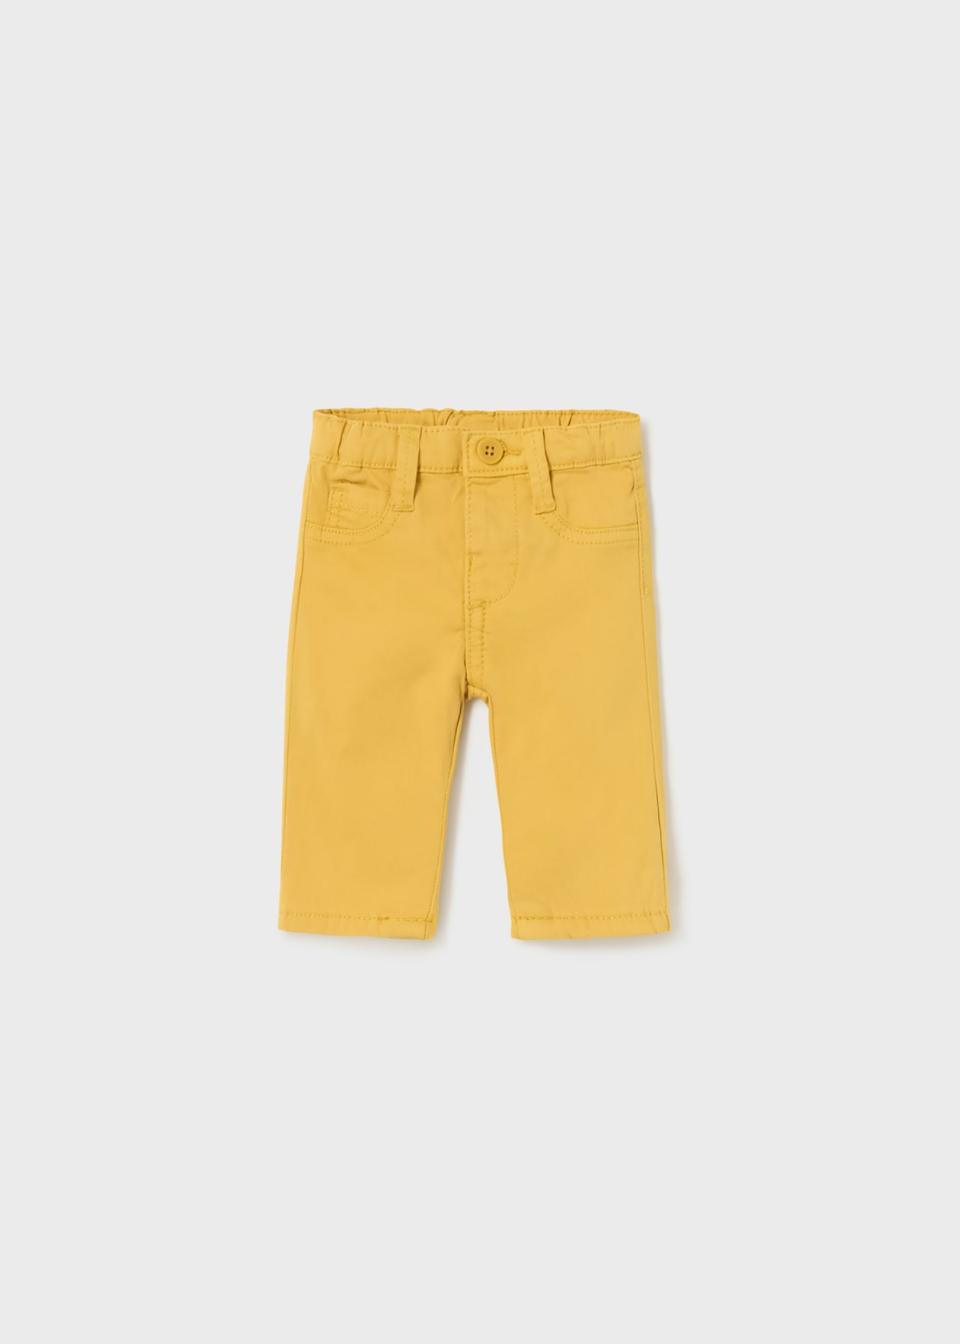 Pantalone neonato in caldo cotone Giallo Mayoral 2517